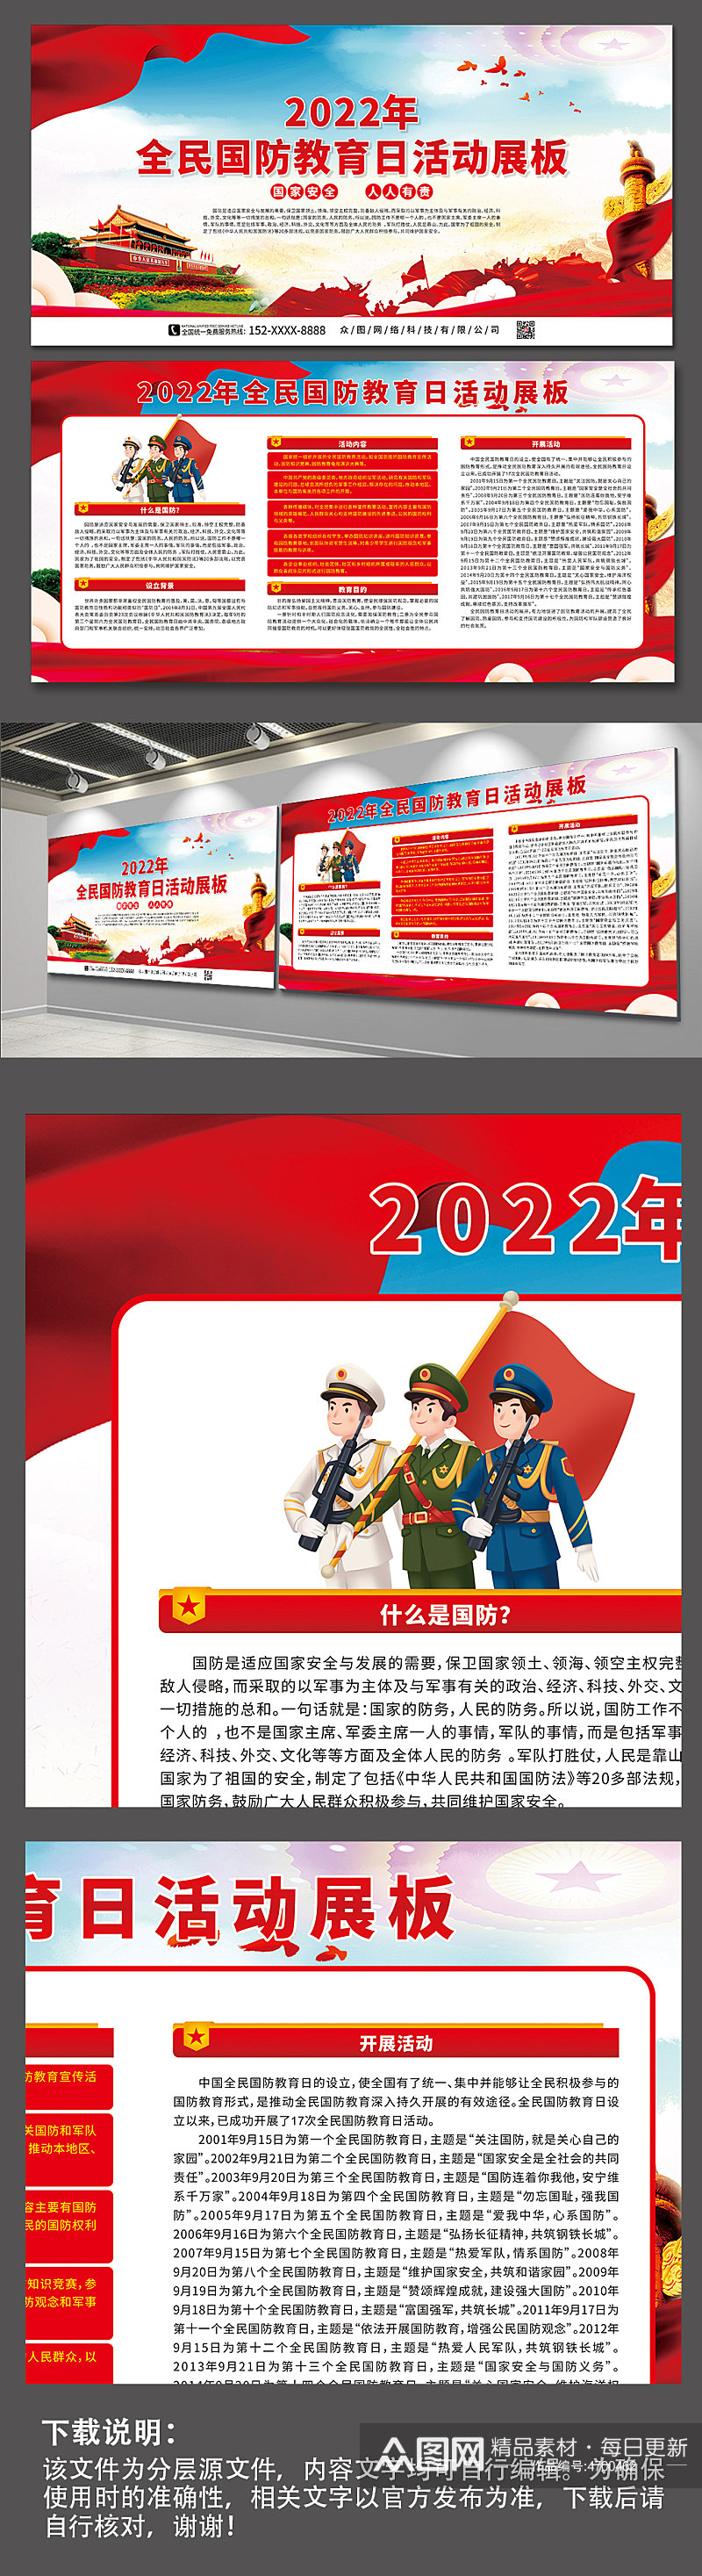 2022年全民国防教育日党建展板素材